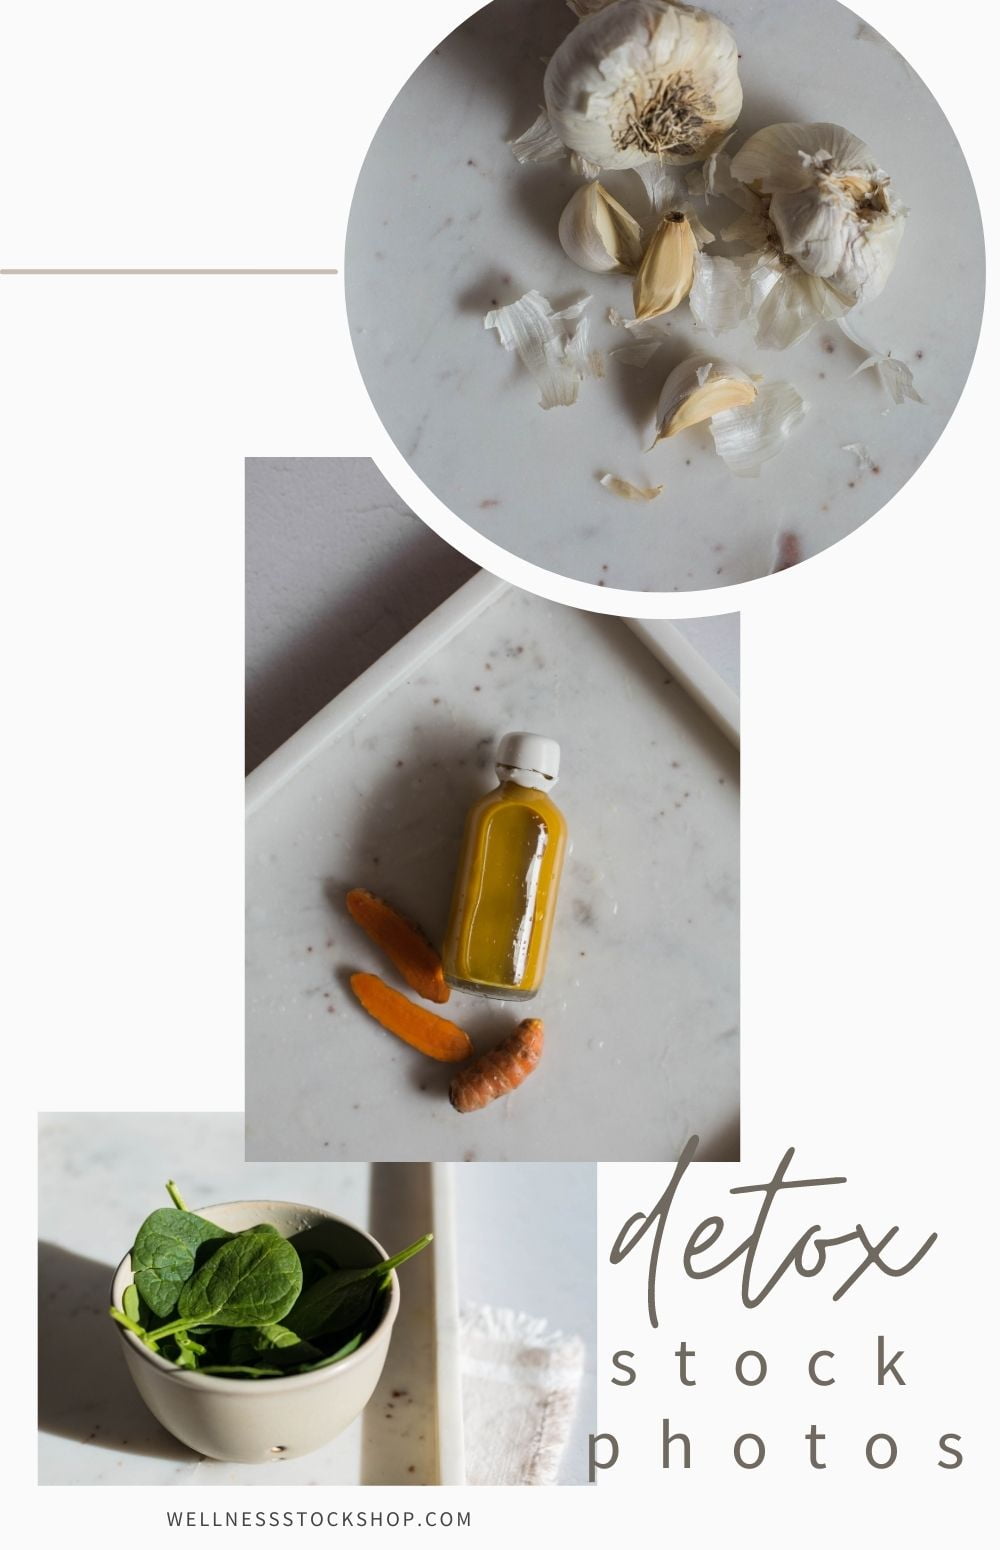 Detox photos collection-2